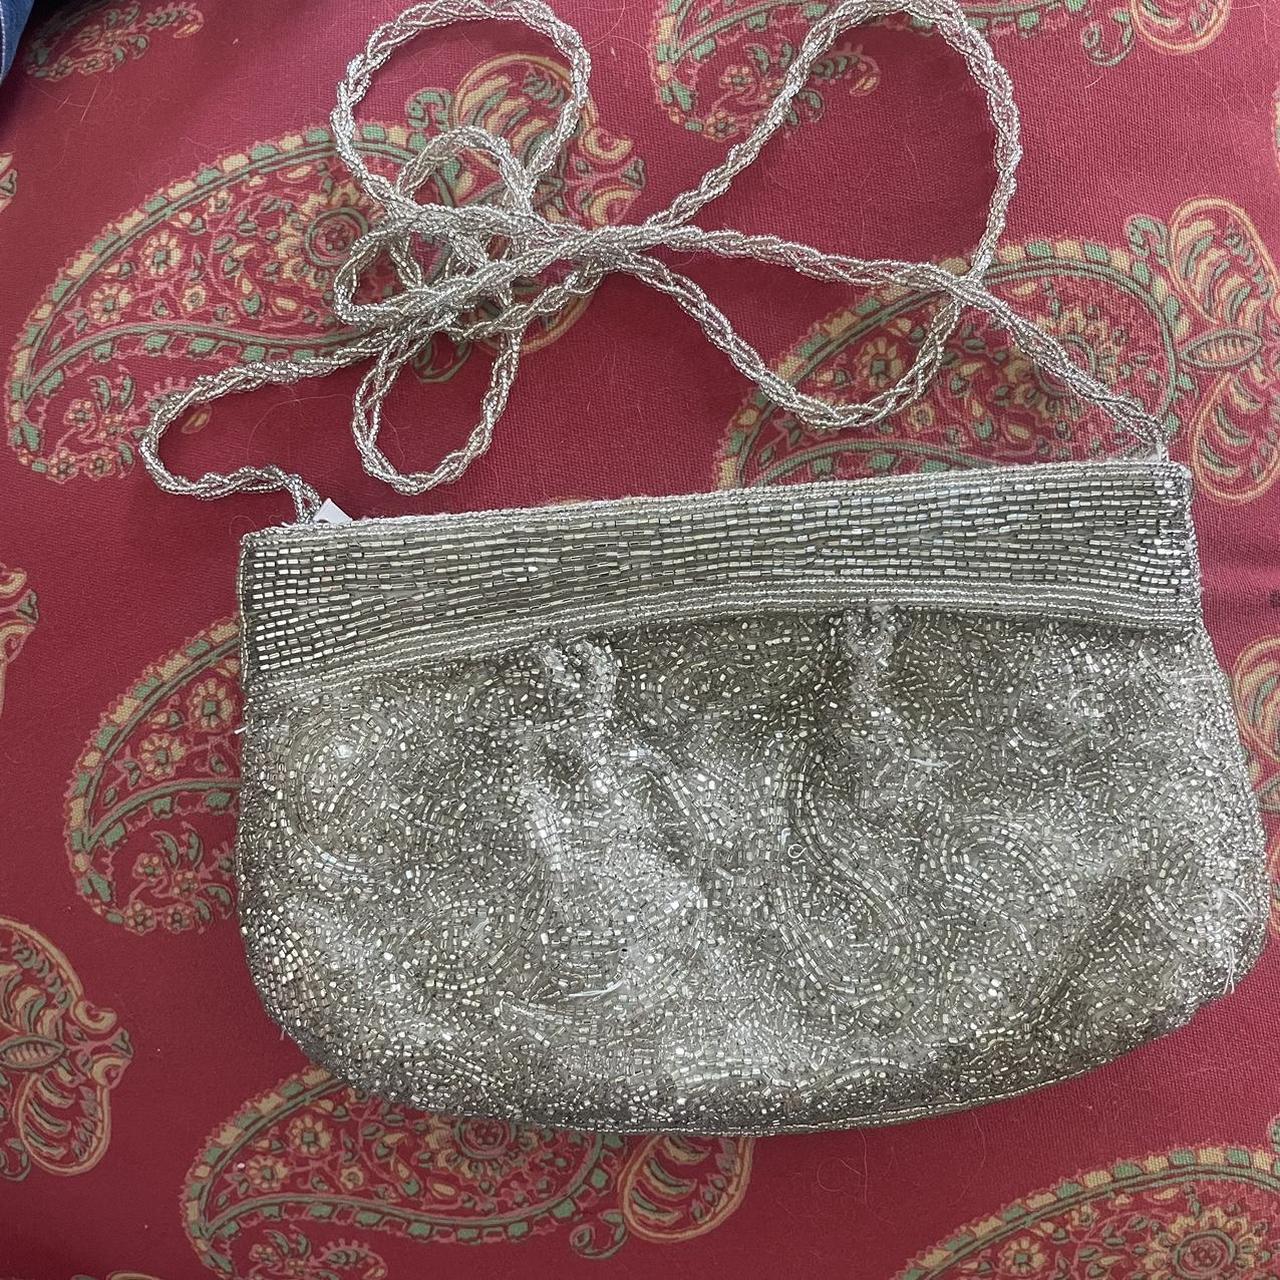 La Regale Silver Beaded Evening Bag Purse Clutch Pouch Shoulder